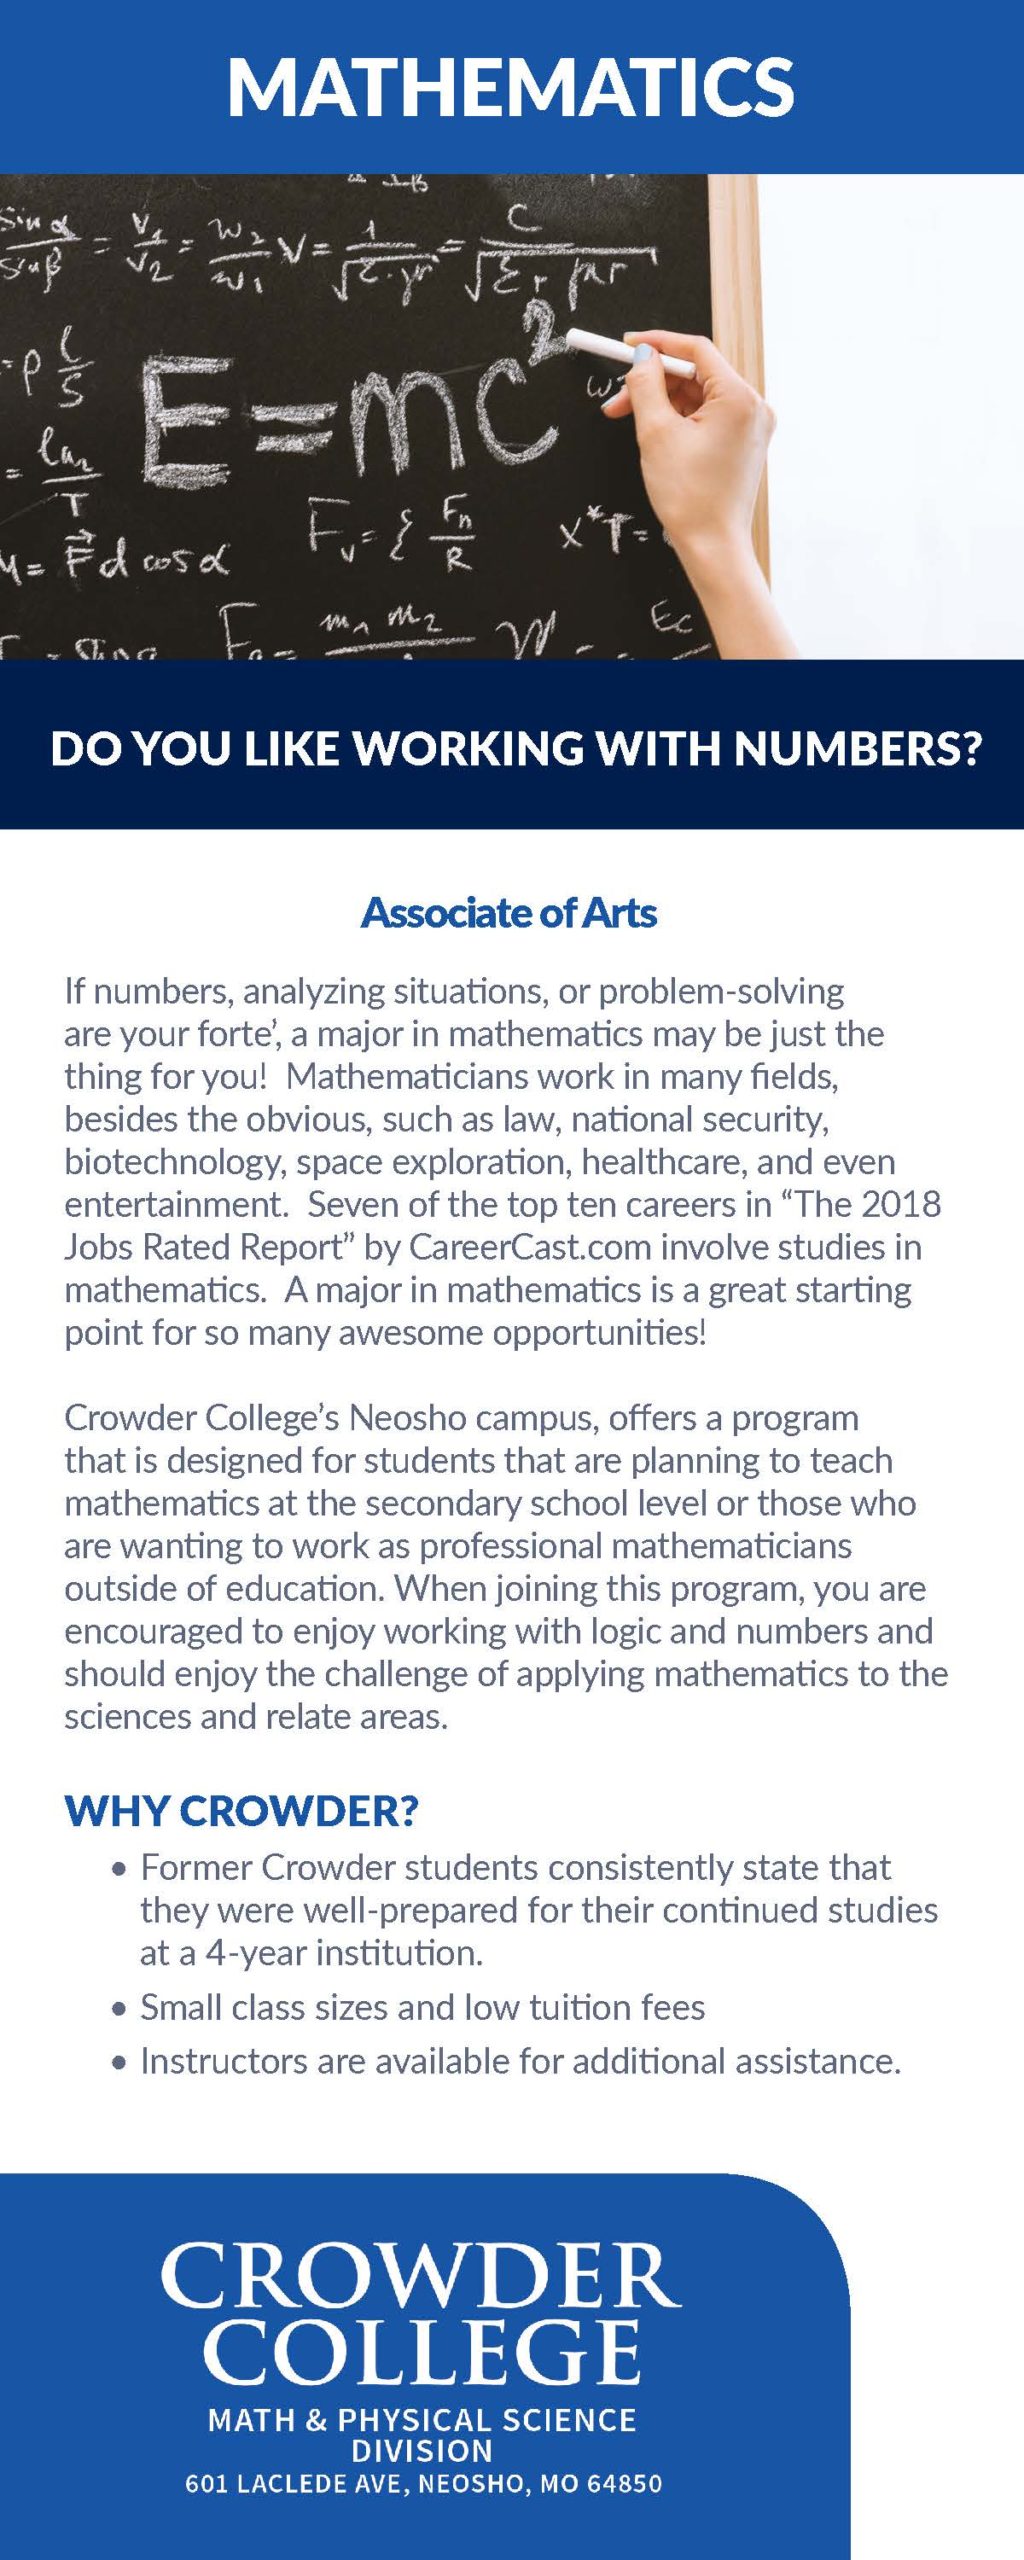 Information about Mathematics program at Crowder College